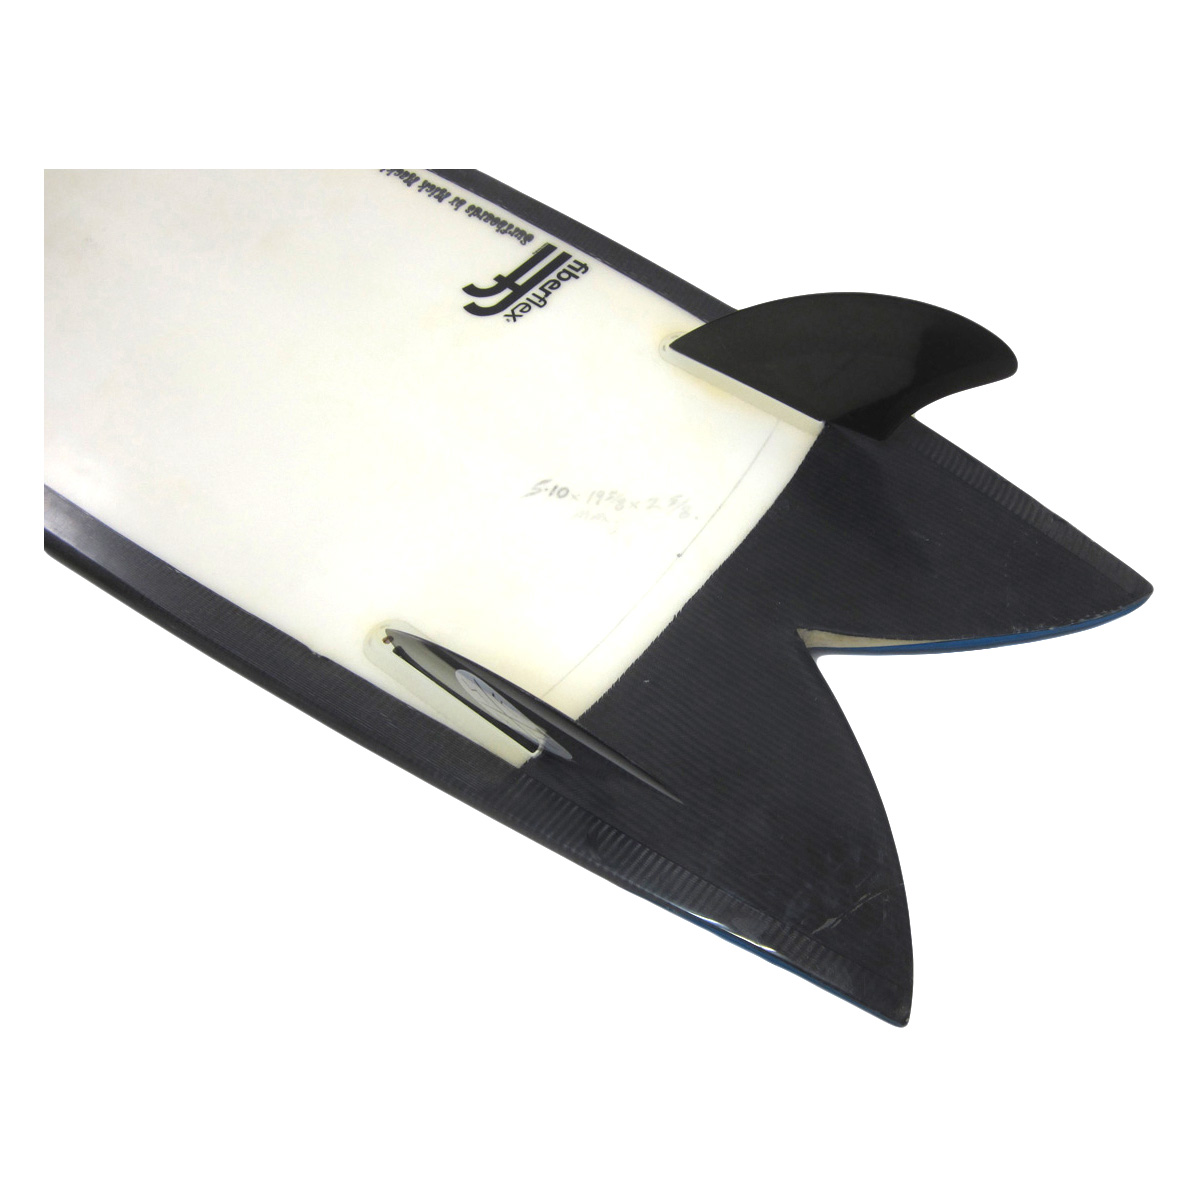 Mick Mackie Surfboards / Flextail Fish 5`10 Fiberflex